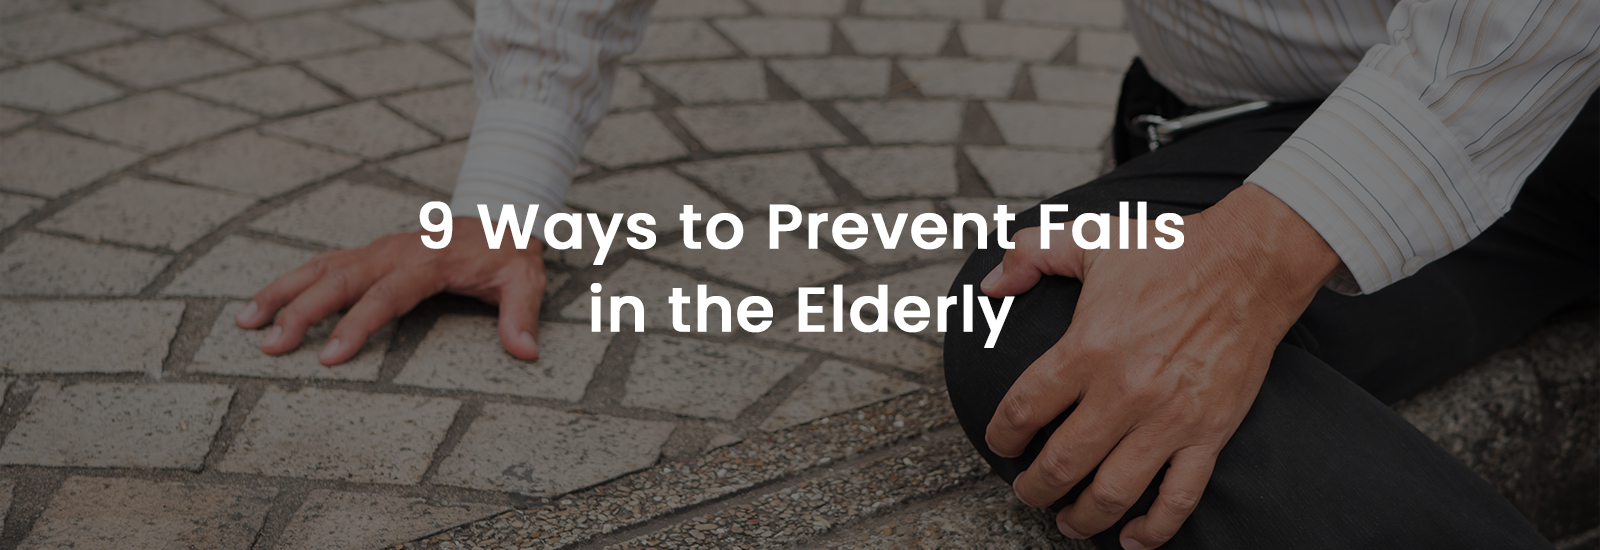 9 ways to prevent falls in elderly banner